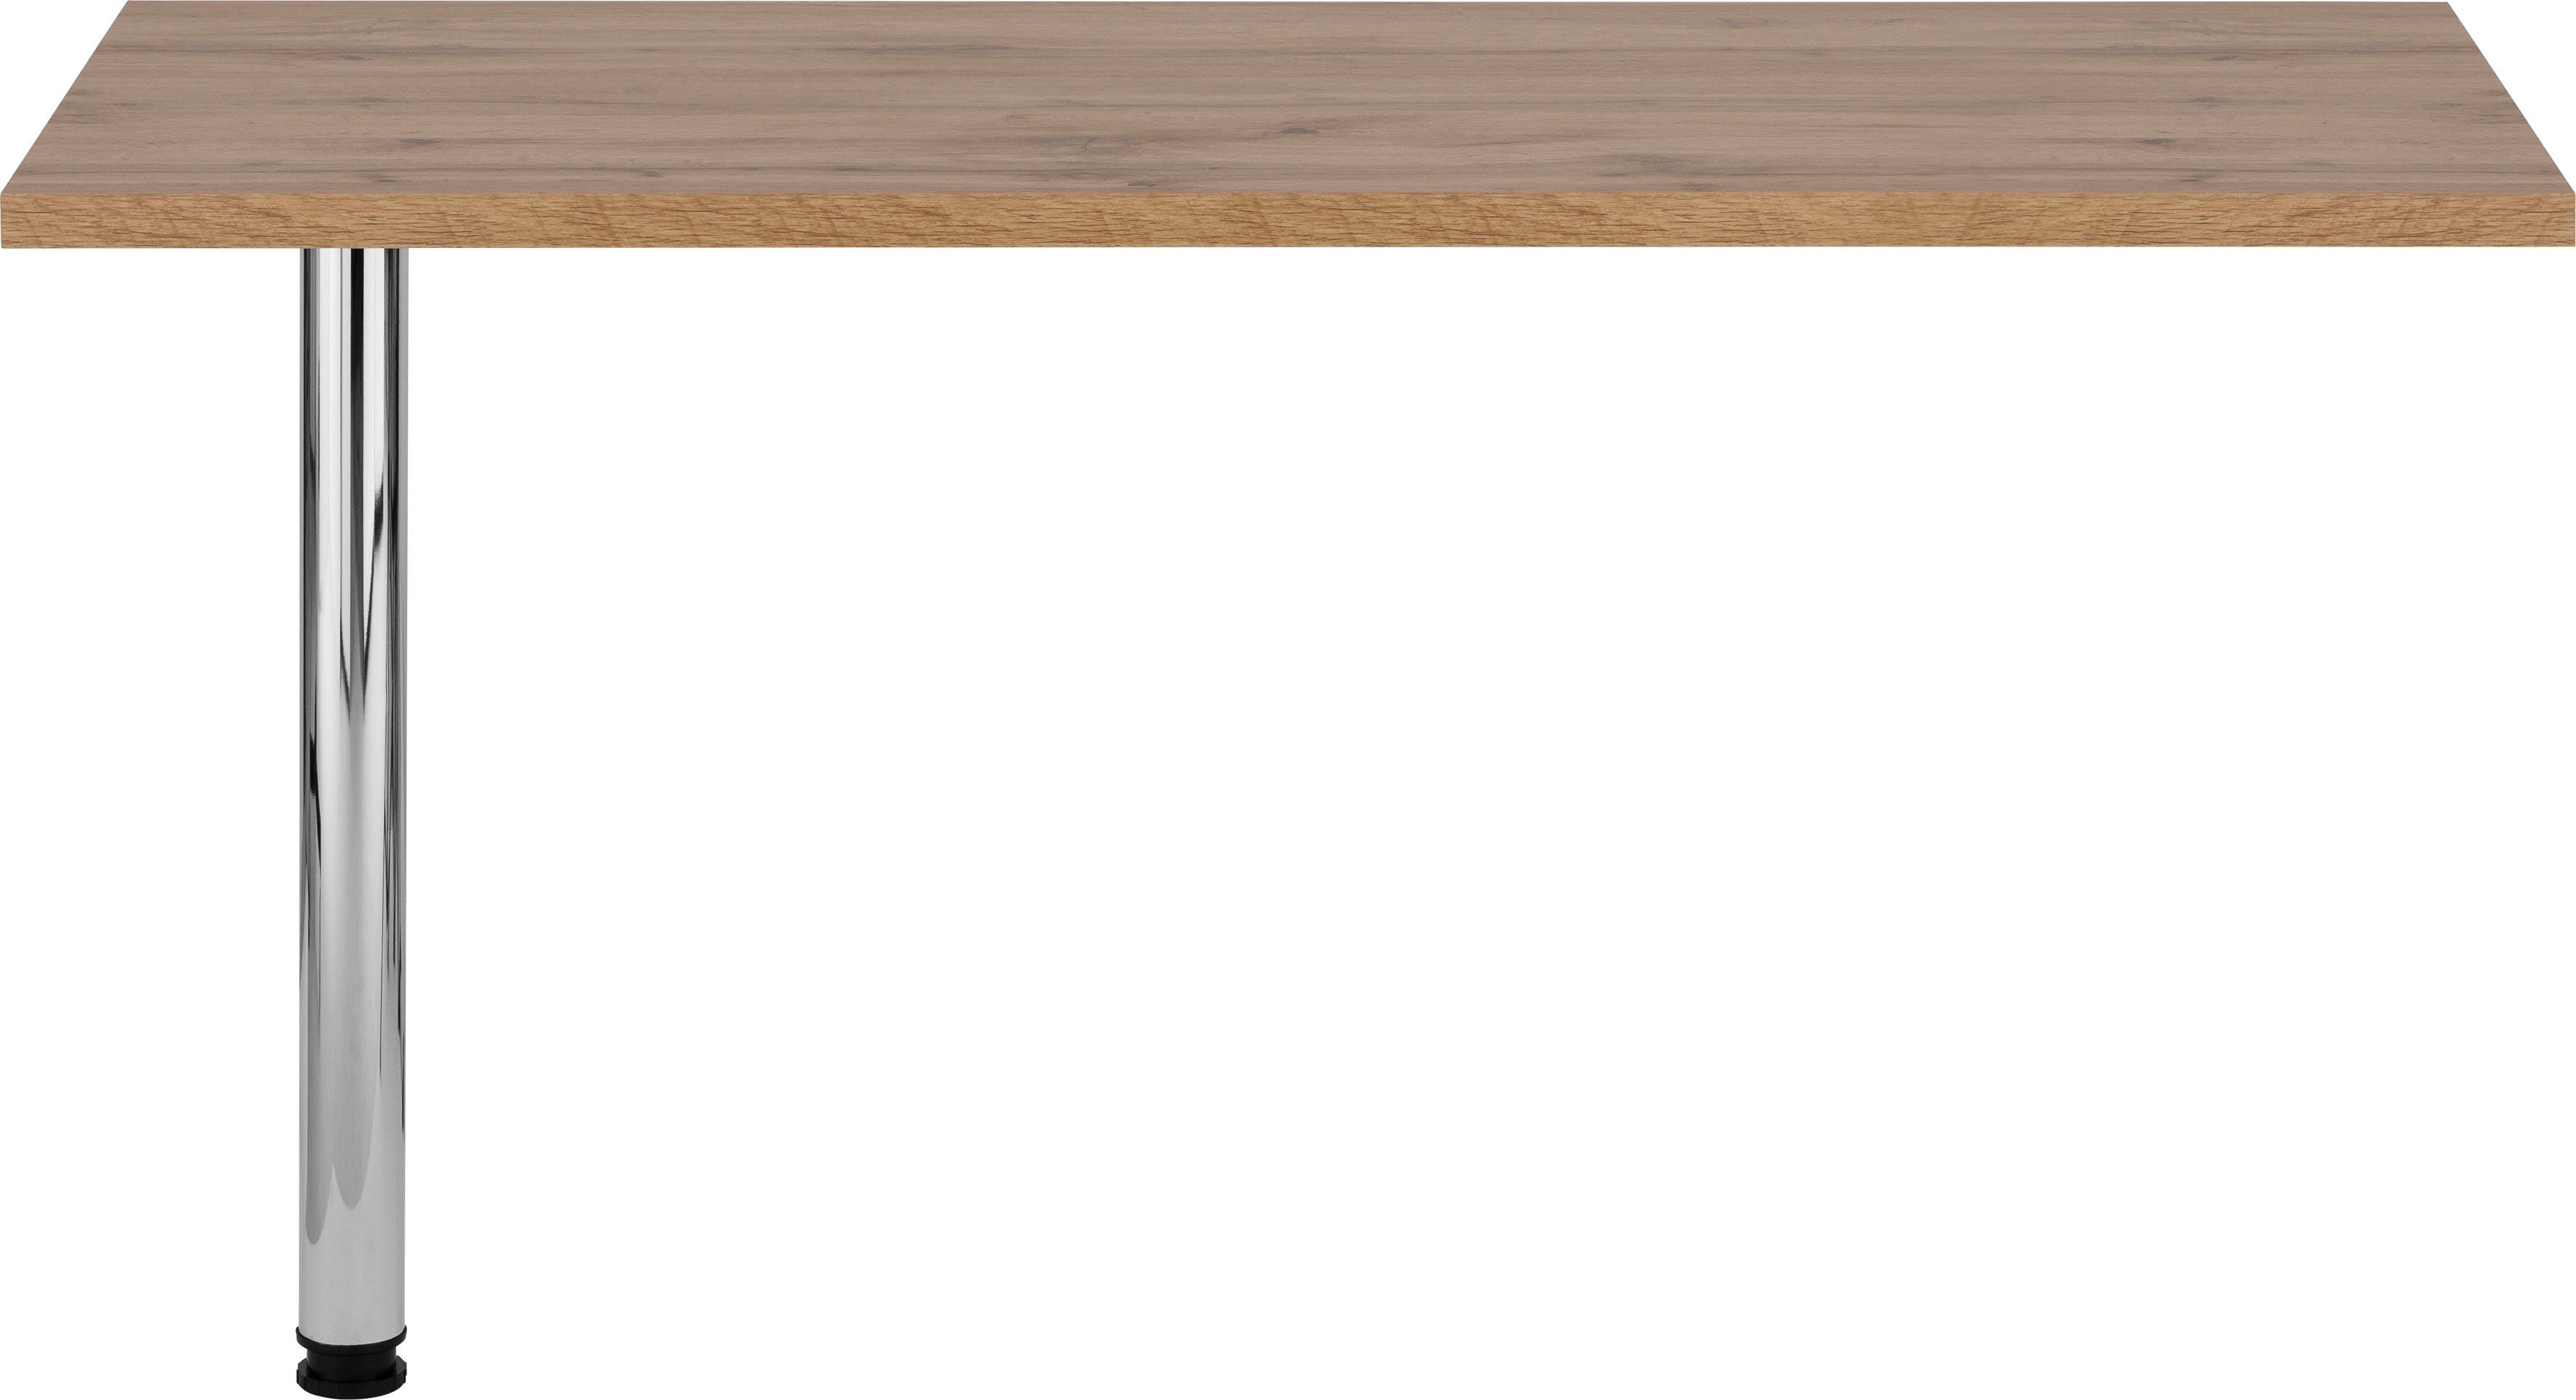 HELD MÖBEL Tresentisch Virginia, 138 cm breit, ideal für kleine Küchen wotaneiche | Stehtische